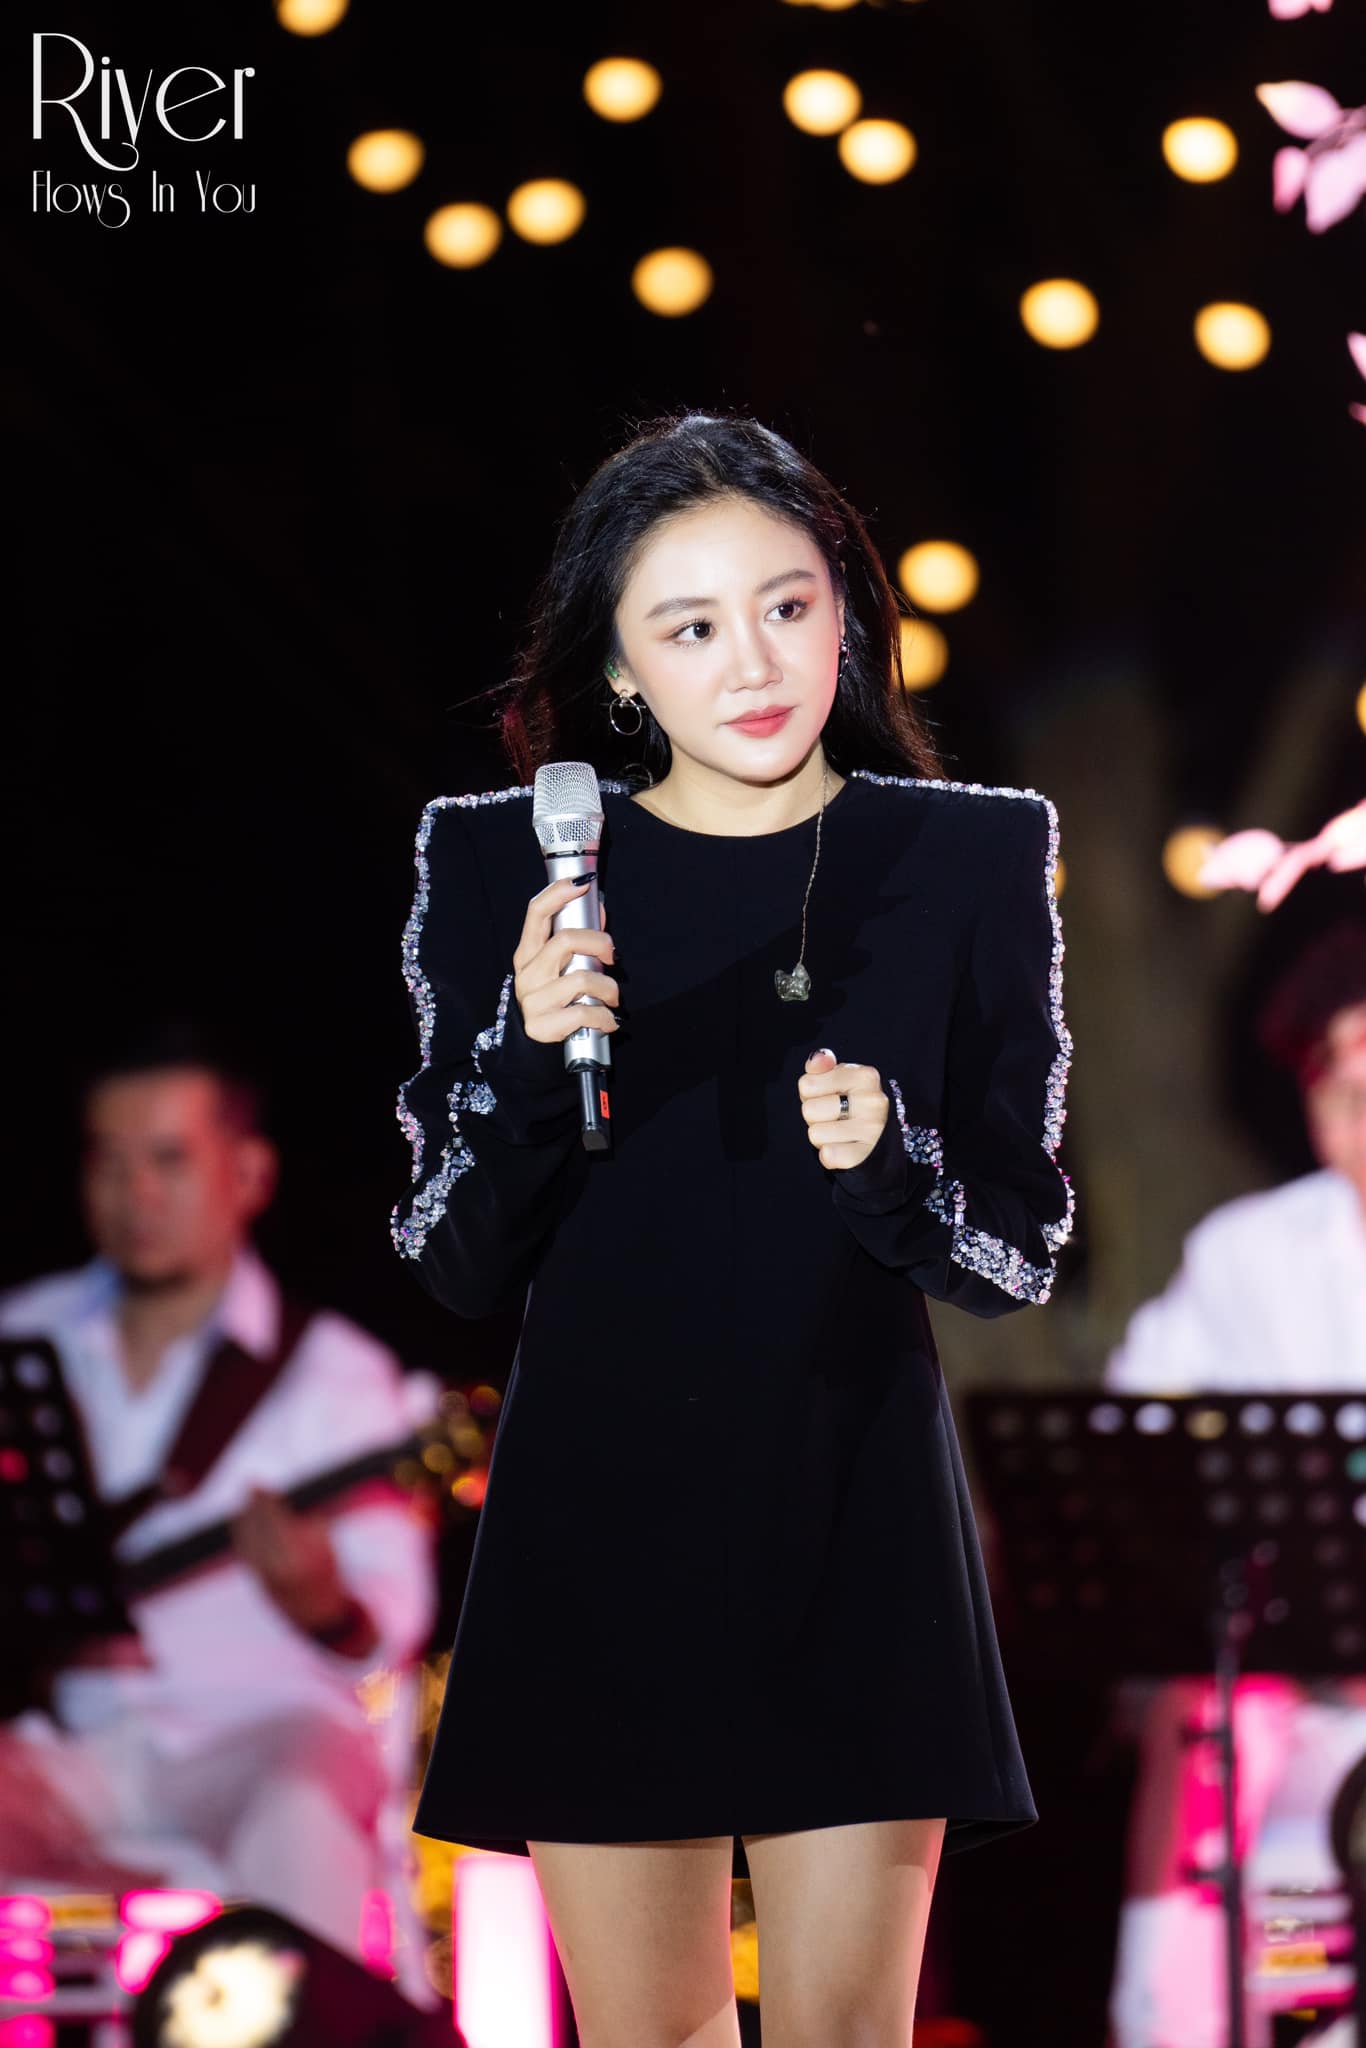 Cô gái được cầu hôn trong đêm nhạc của Văn Mai Hương, nhưng biểu cảm 'lạ' khiến bạn trai cũng sượng trân - ảnh 1